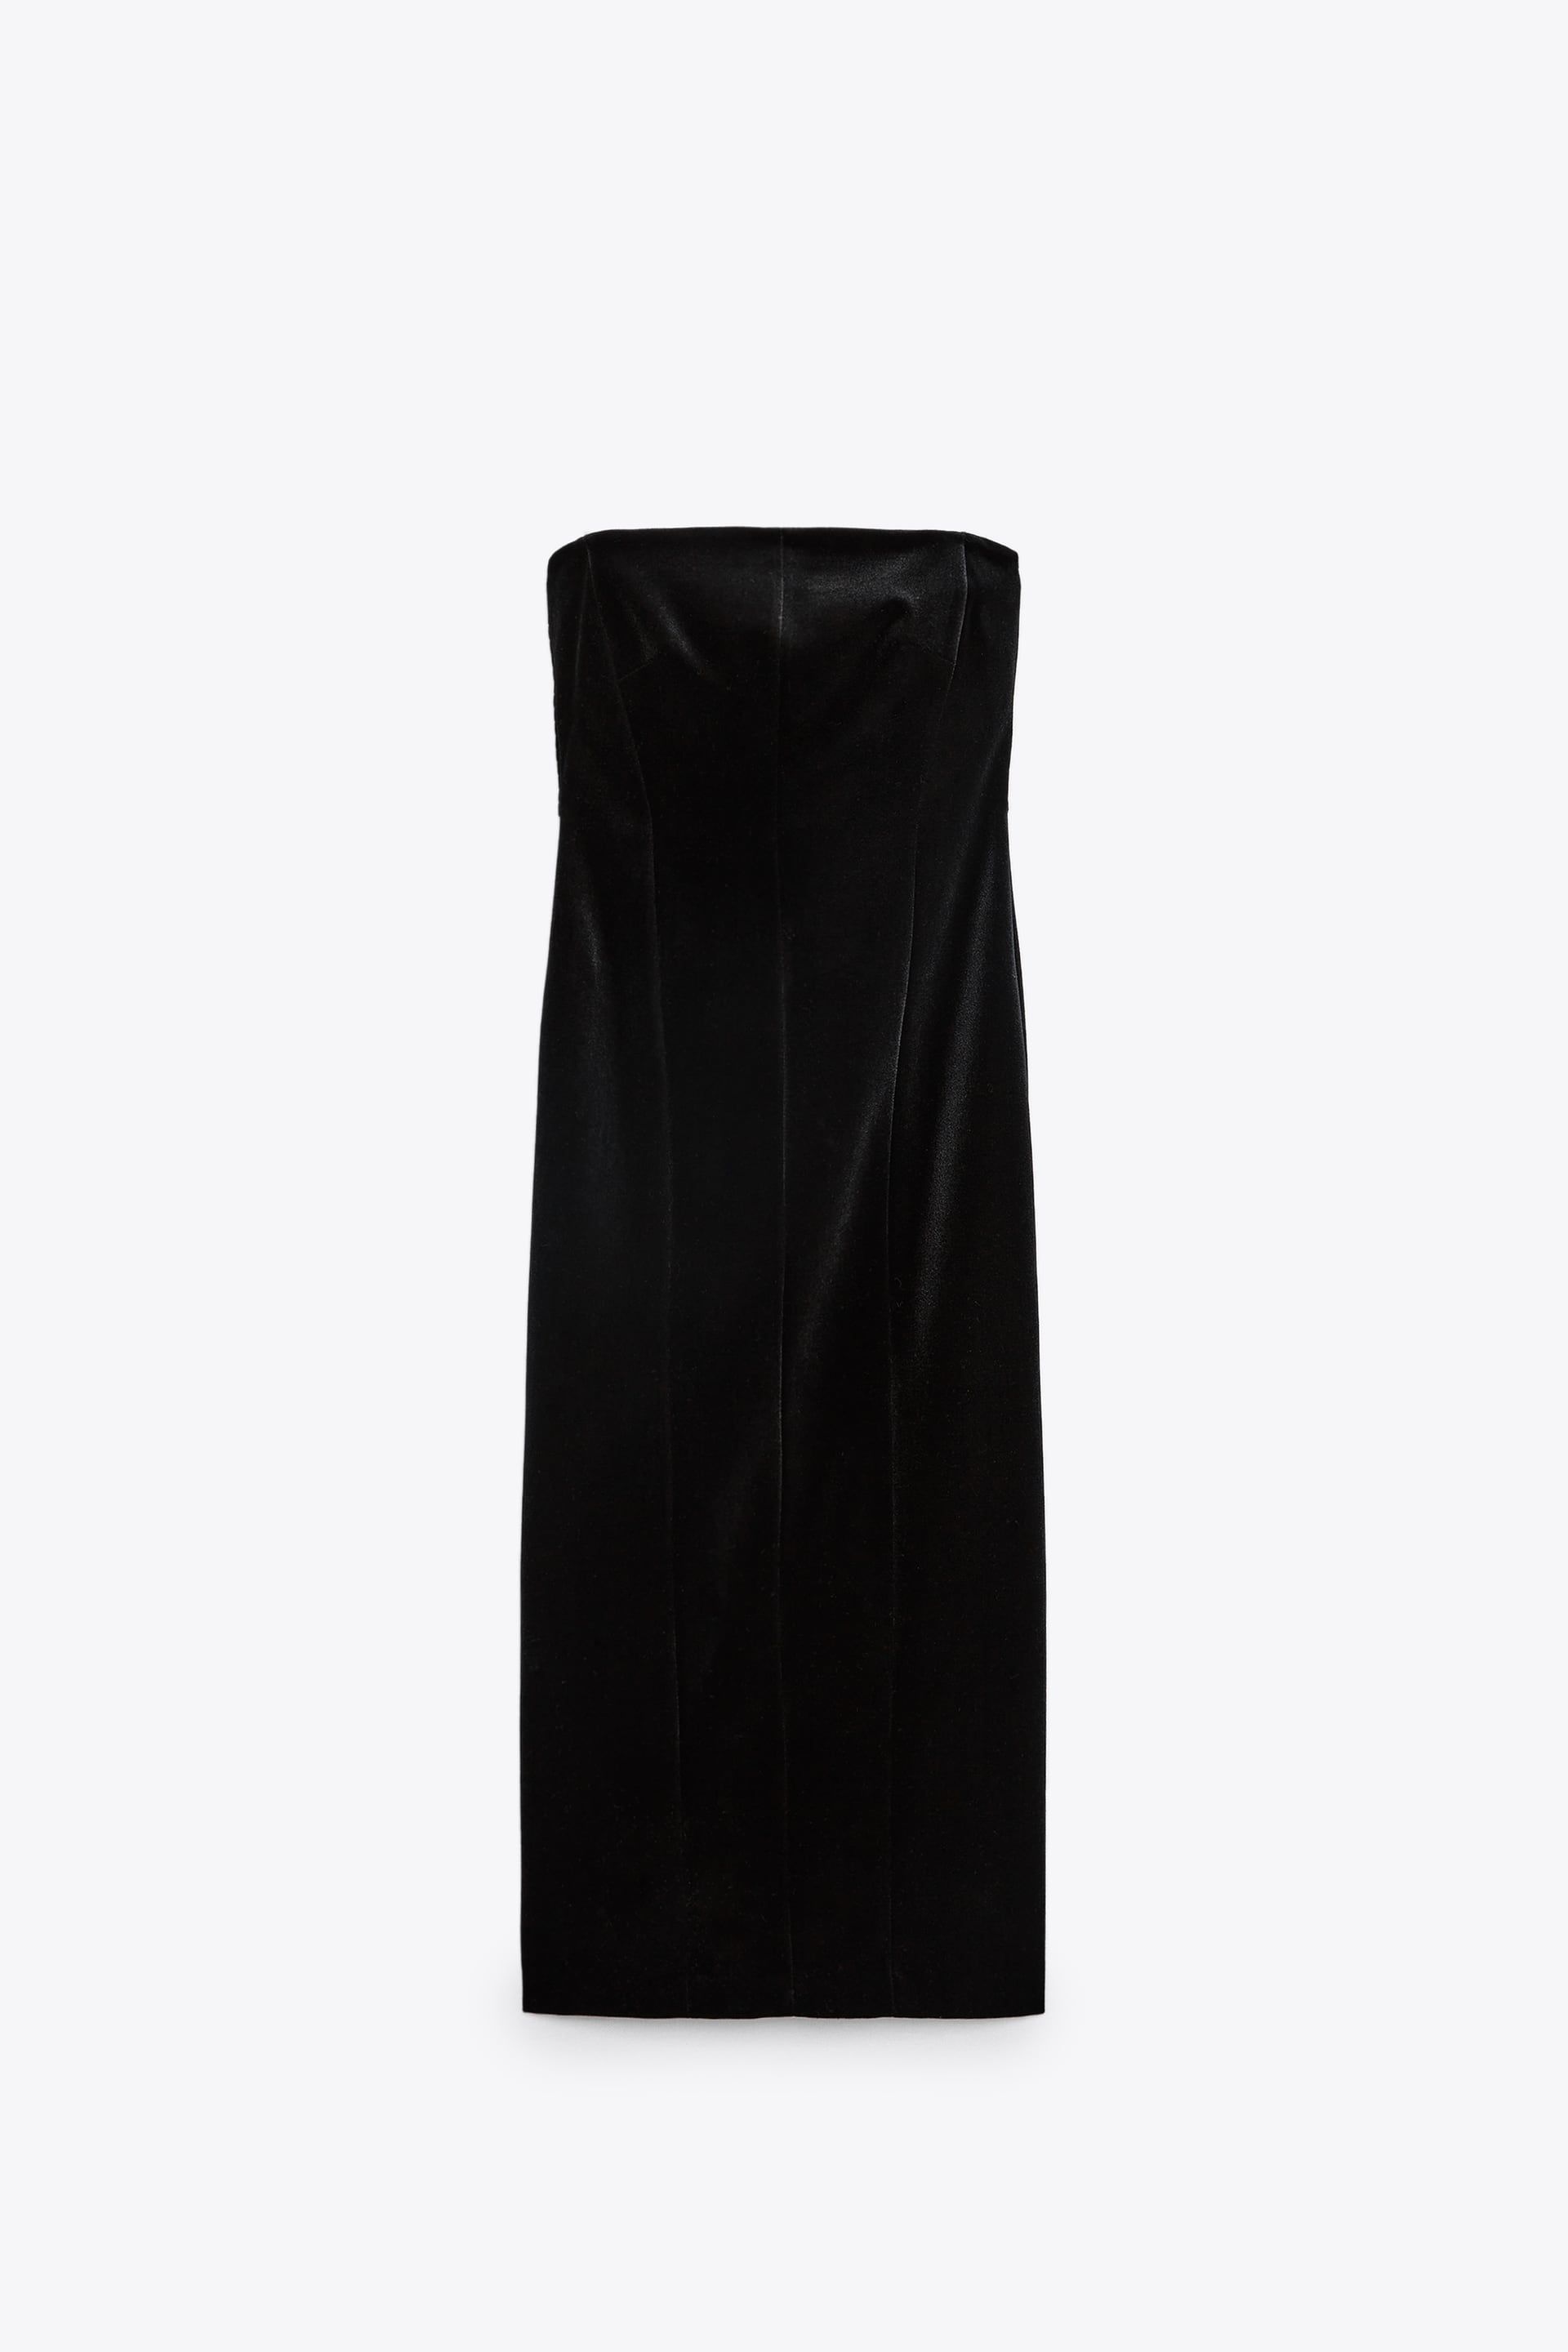 To Ζara φόρεμα που κοστίζει 50 ευρώ και είναι ιδανικό για το ρεβεγιόν | Ι  LOVE STYLE